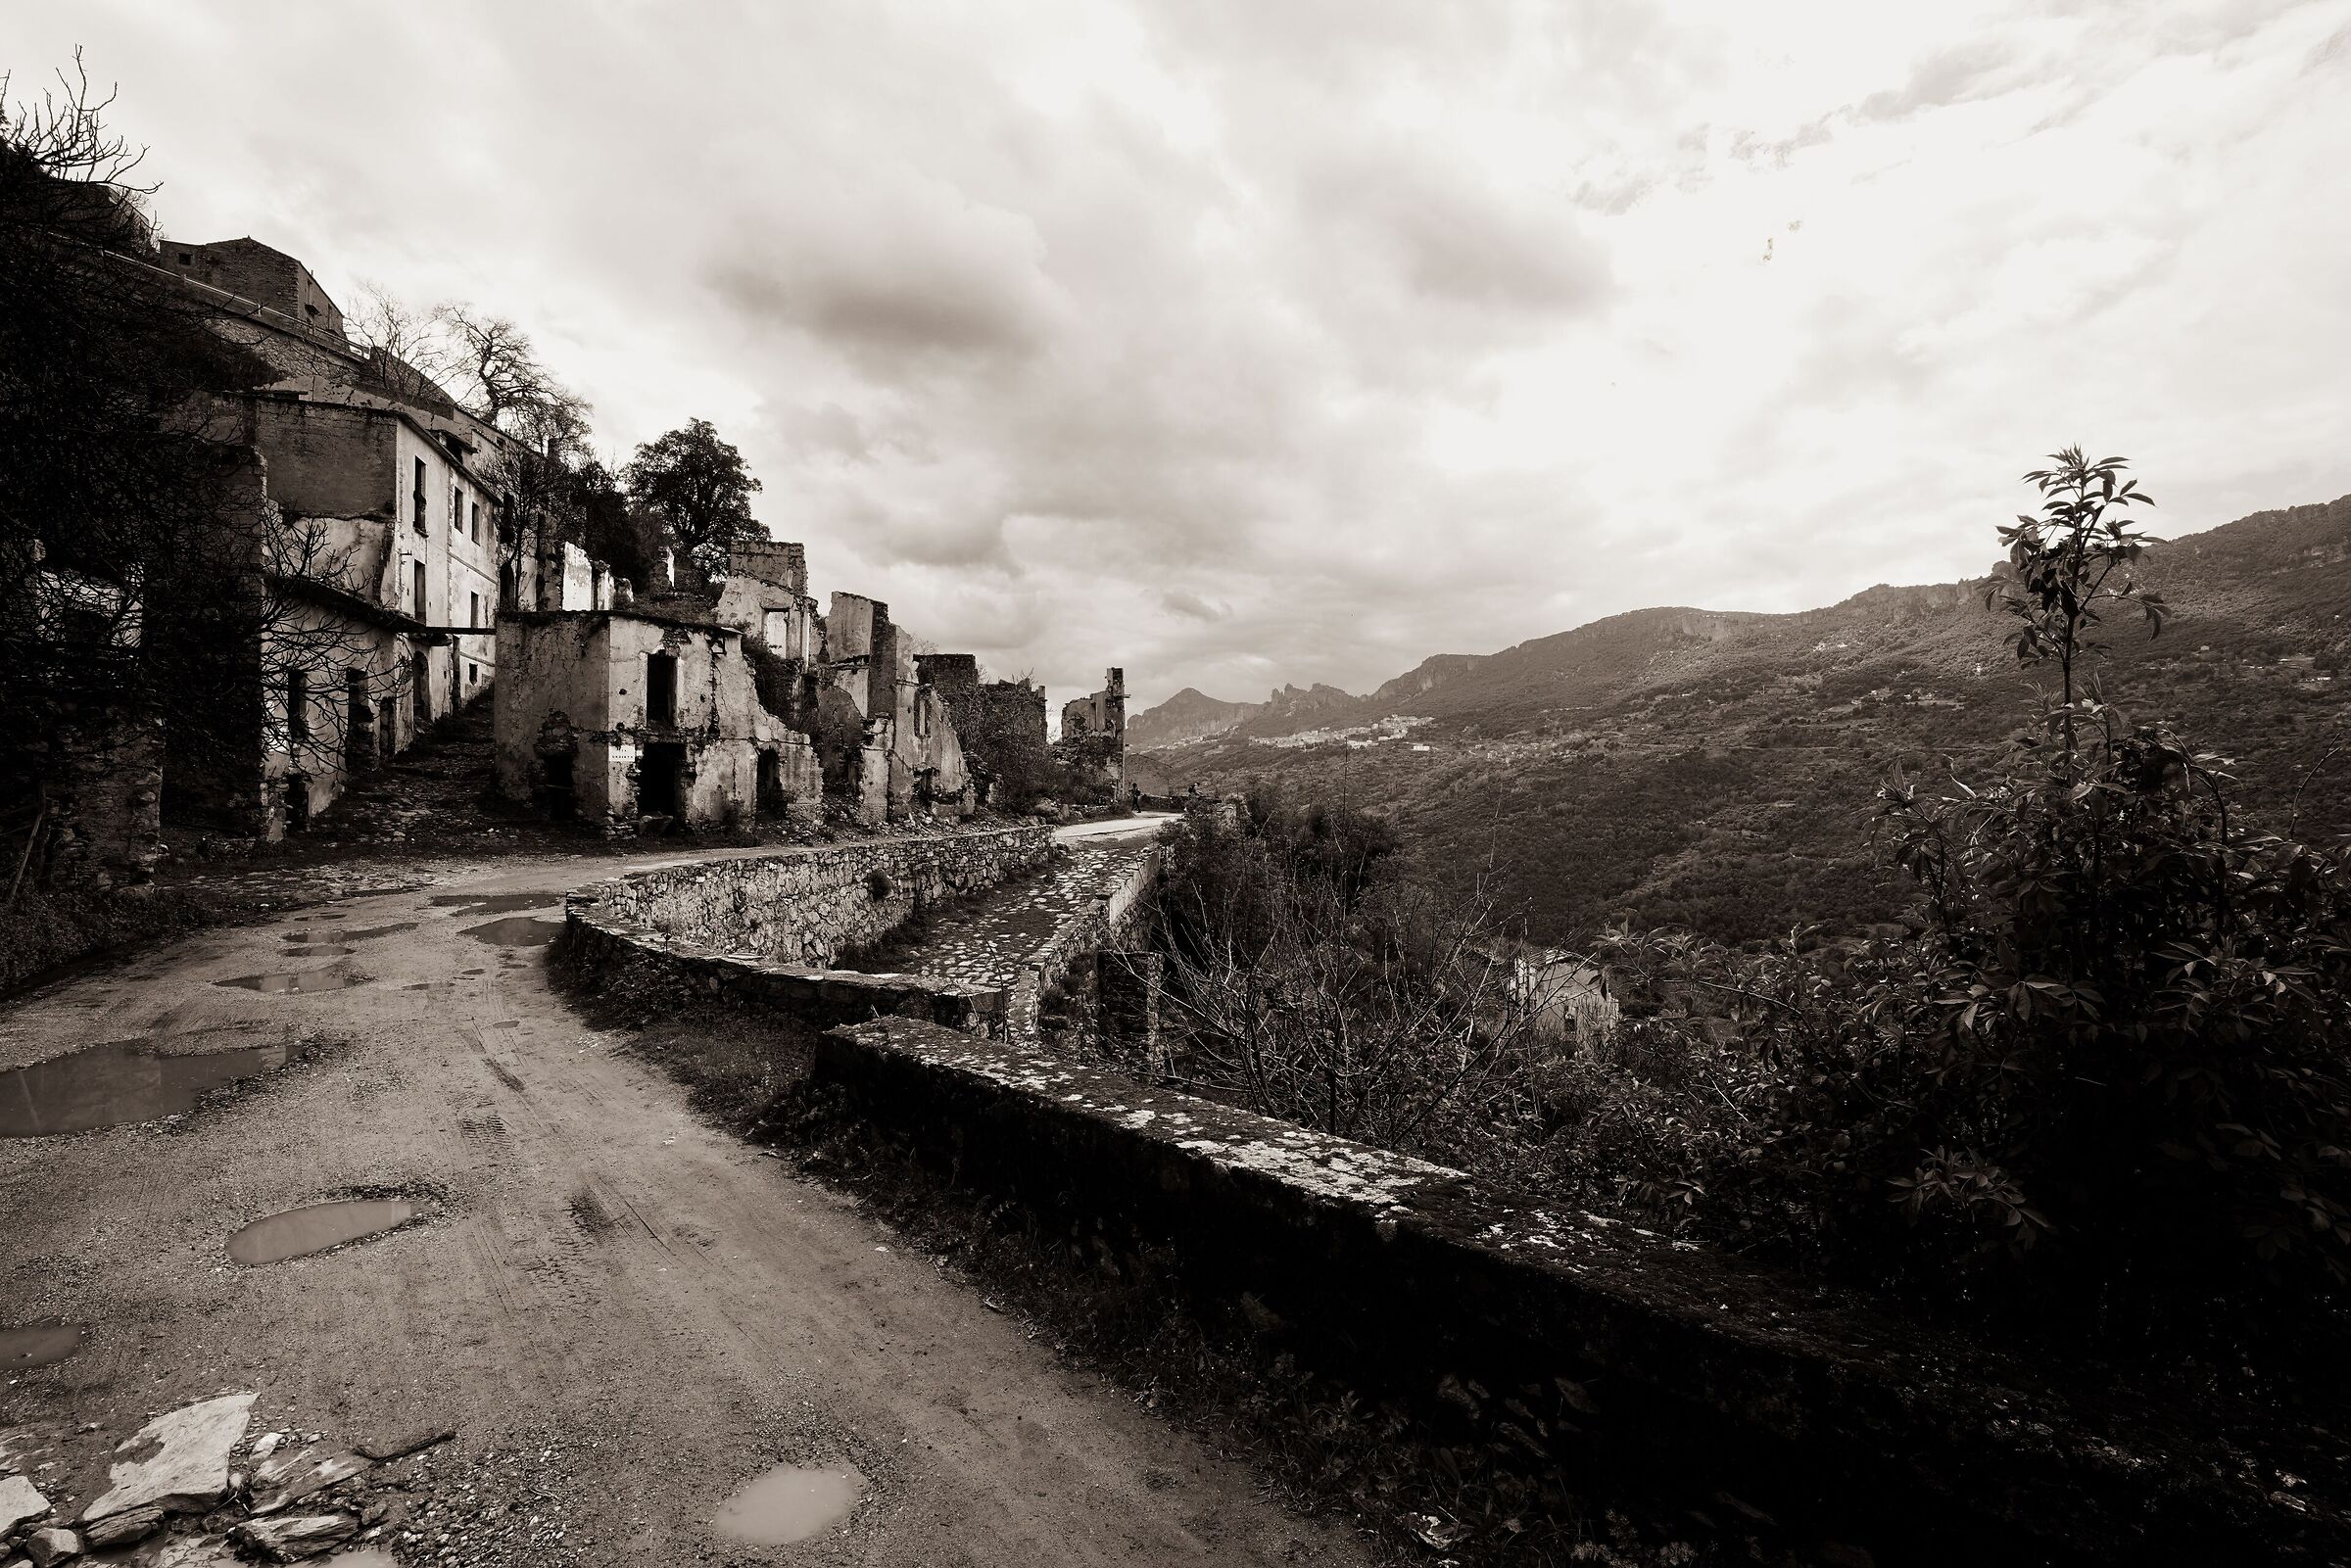 The ghost village of Gairo Vecchio...